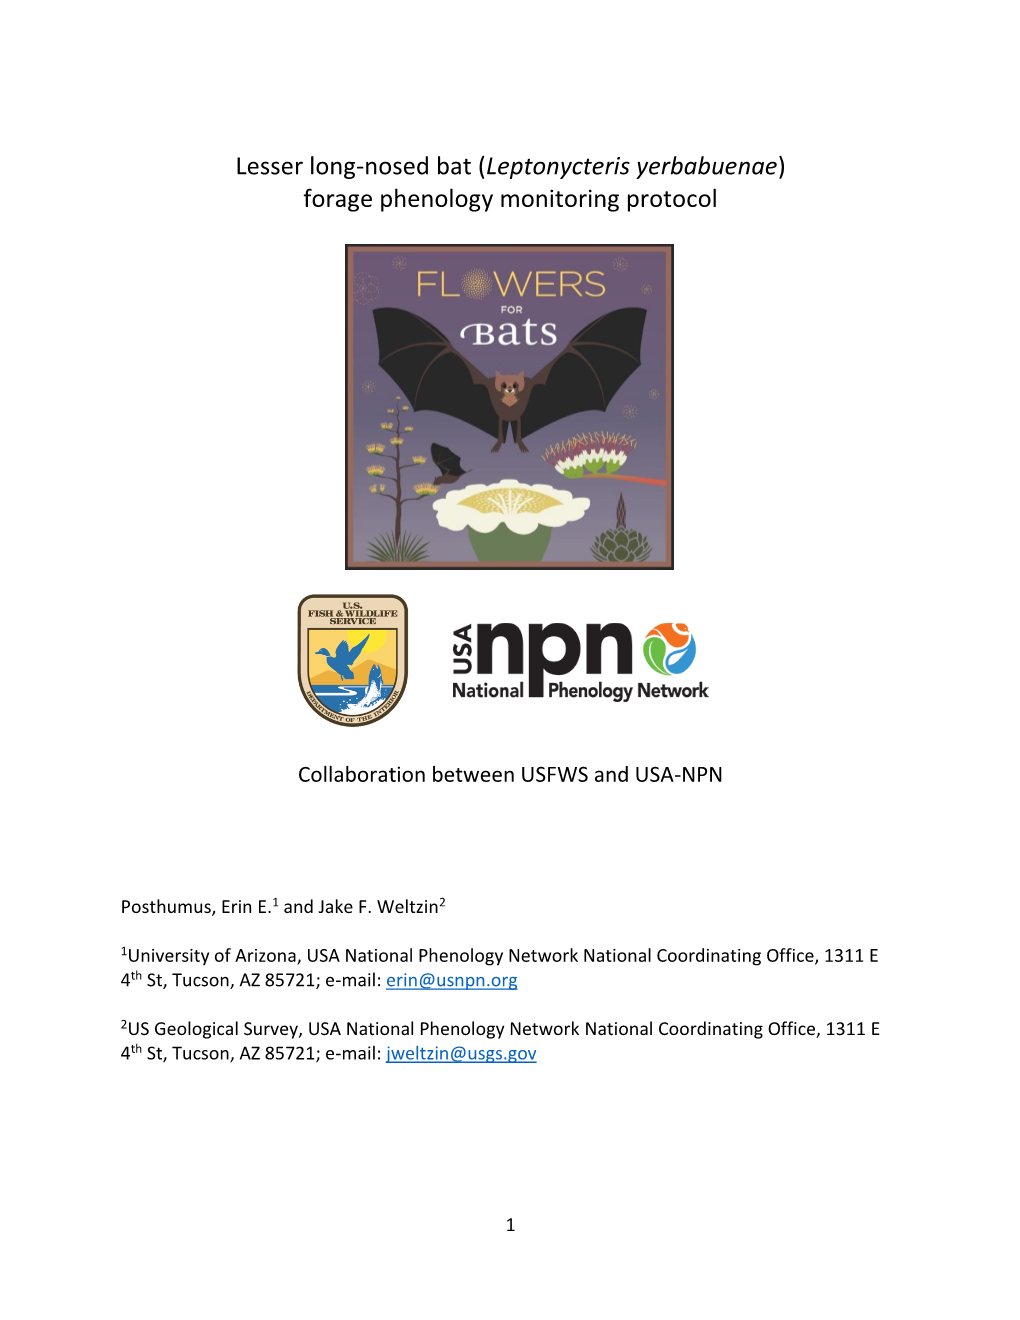 Lesser Long-Nosed Bat (Leptonycteris Yerbabuenae) Forage Phenology Monitoring Protocol